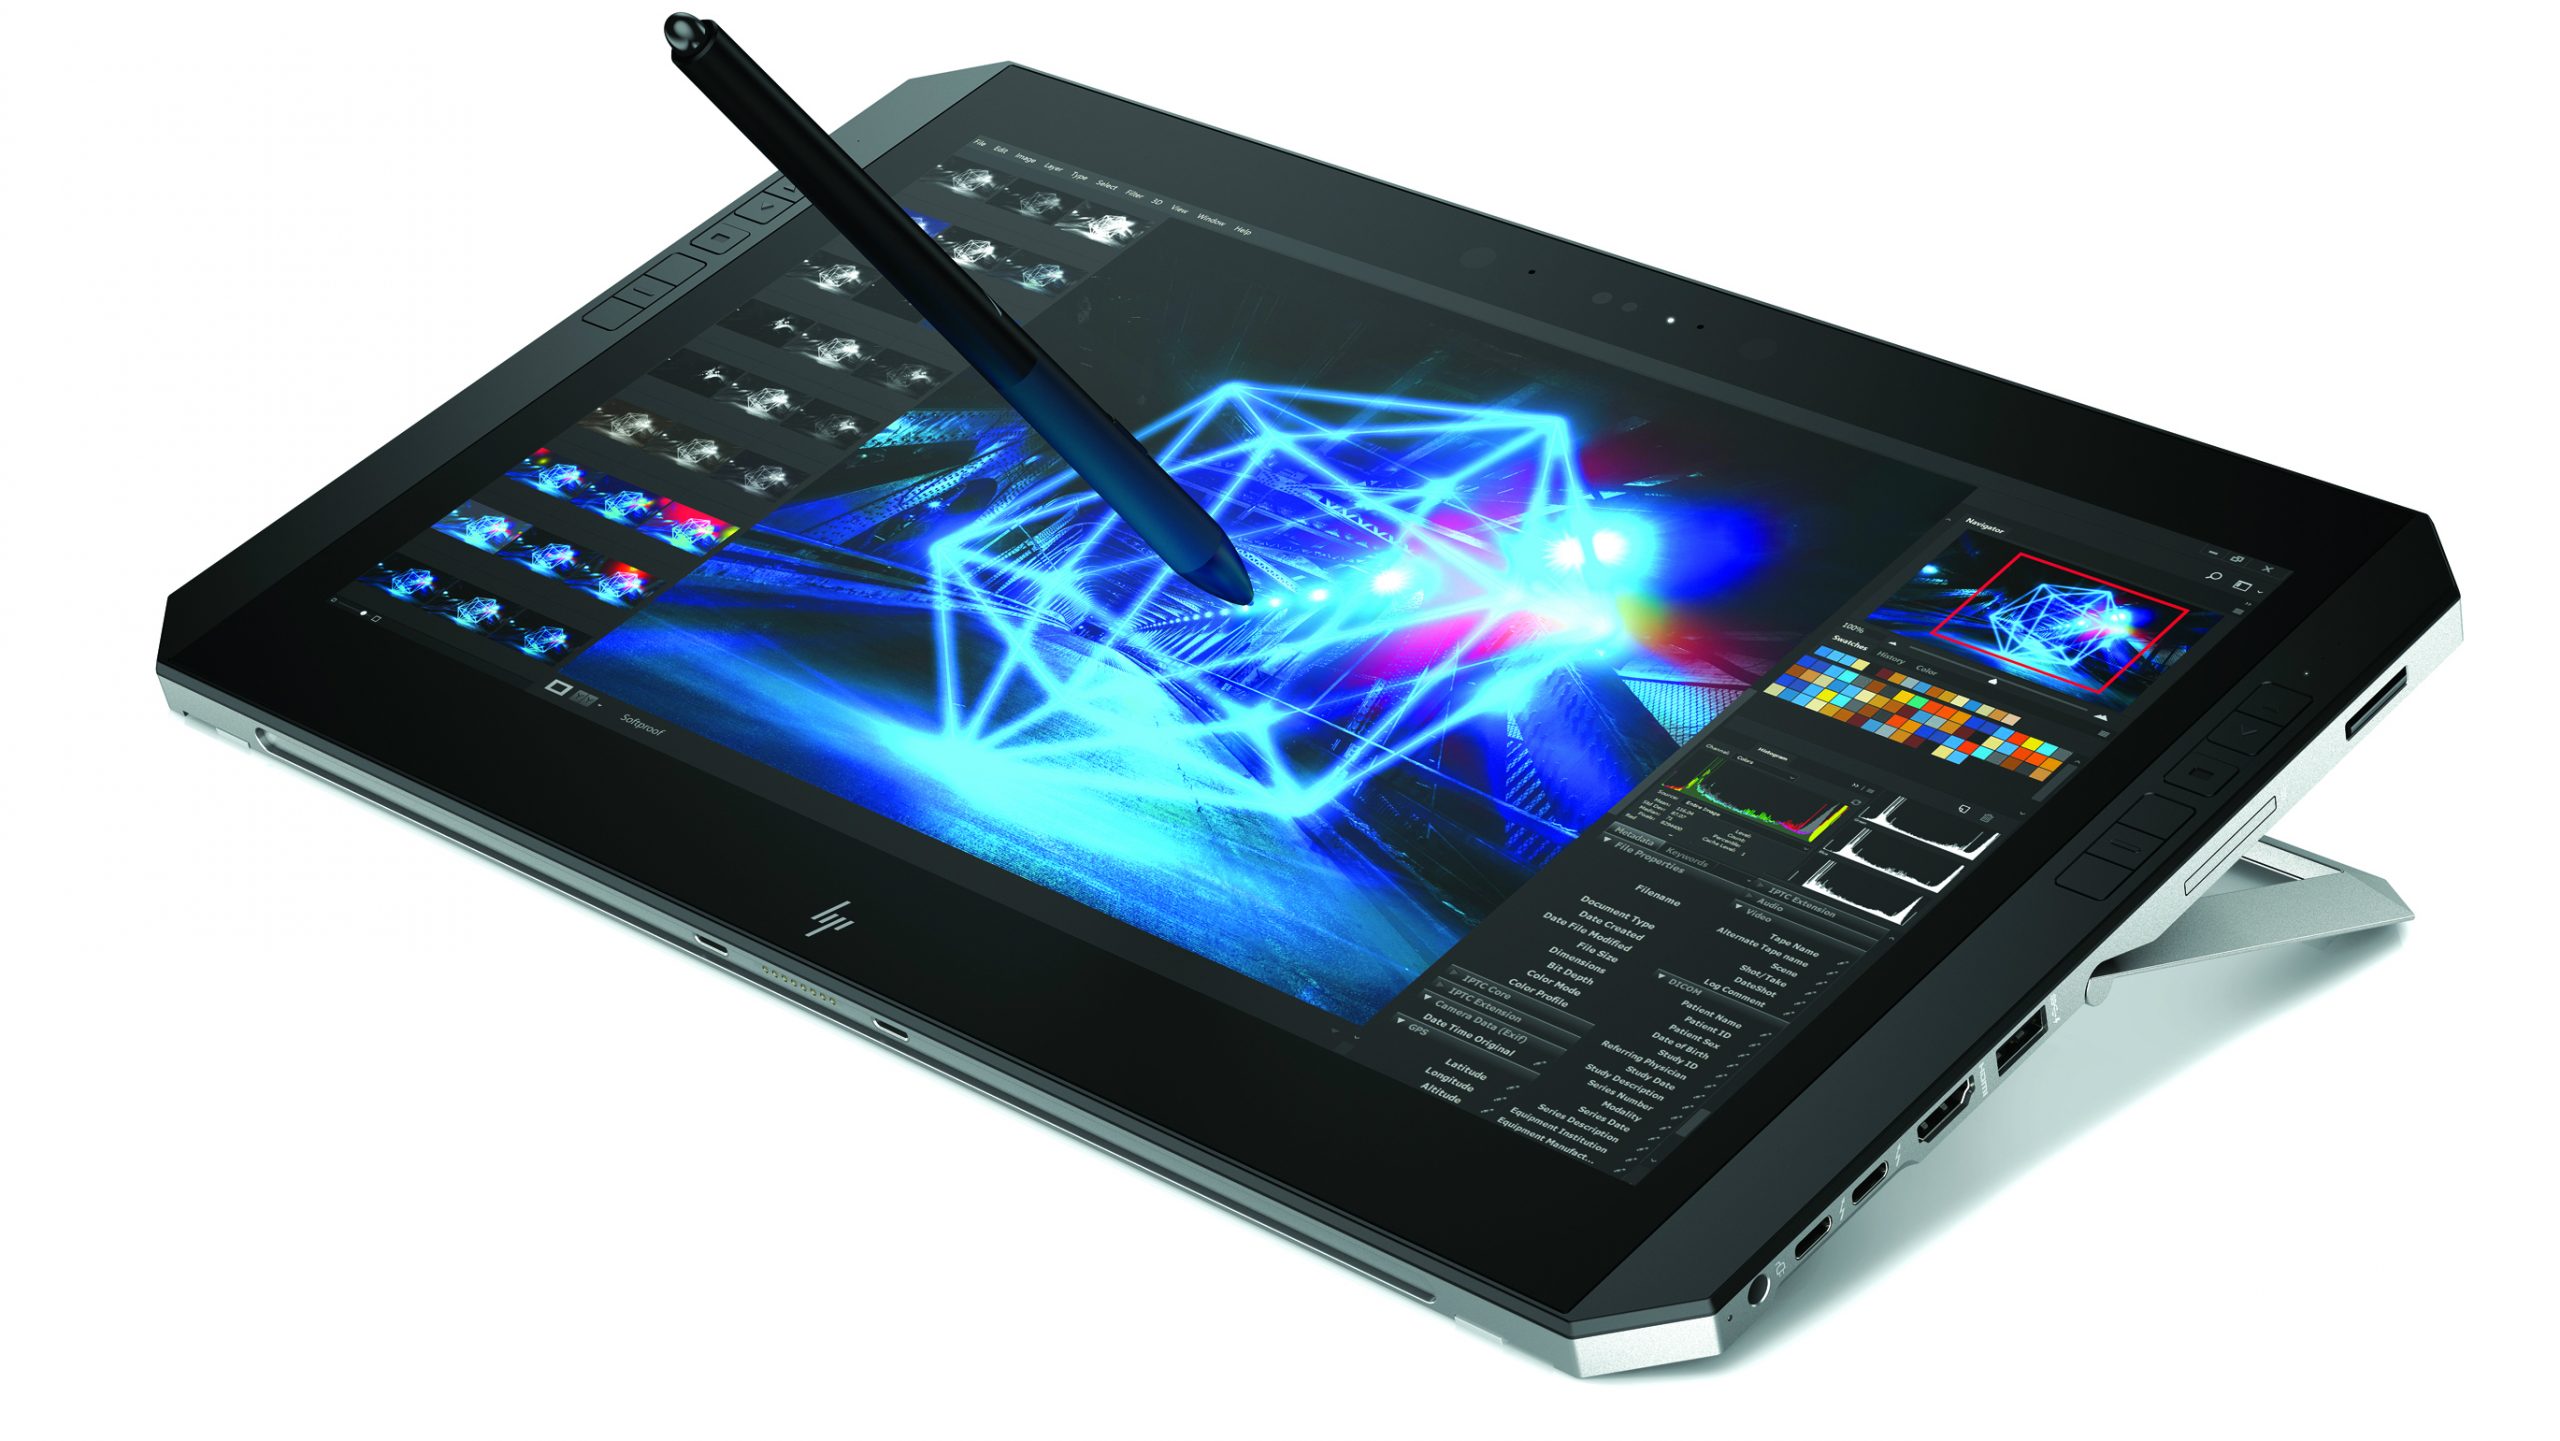 Estación de trabajo XP Zbook X2 G4: una potente tableta creativa